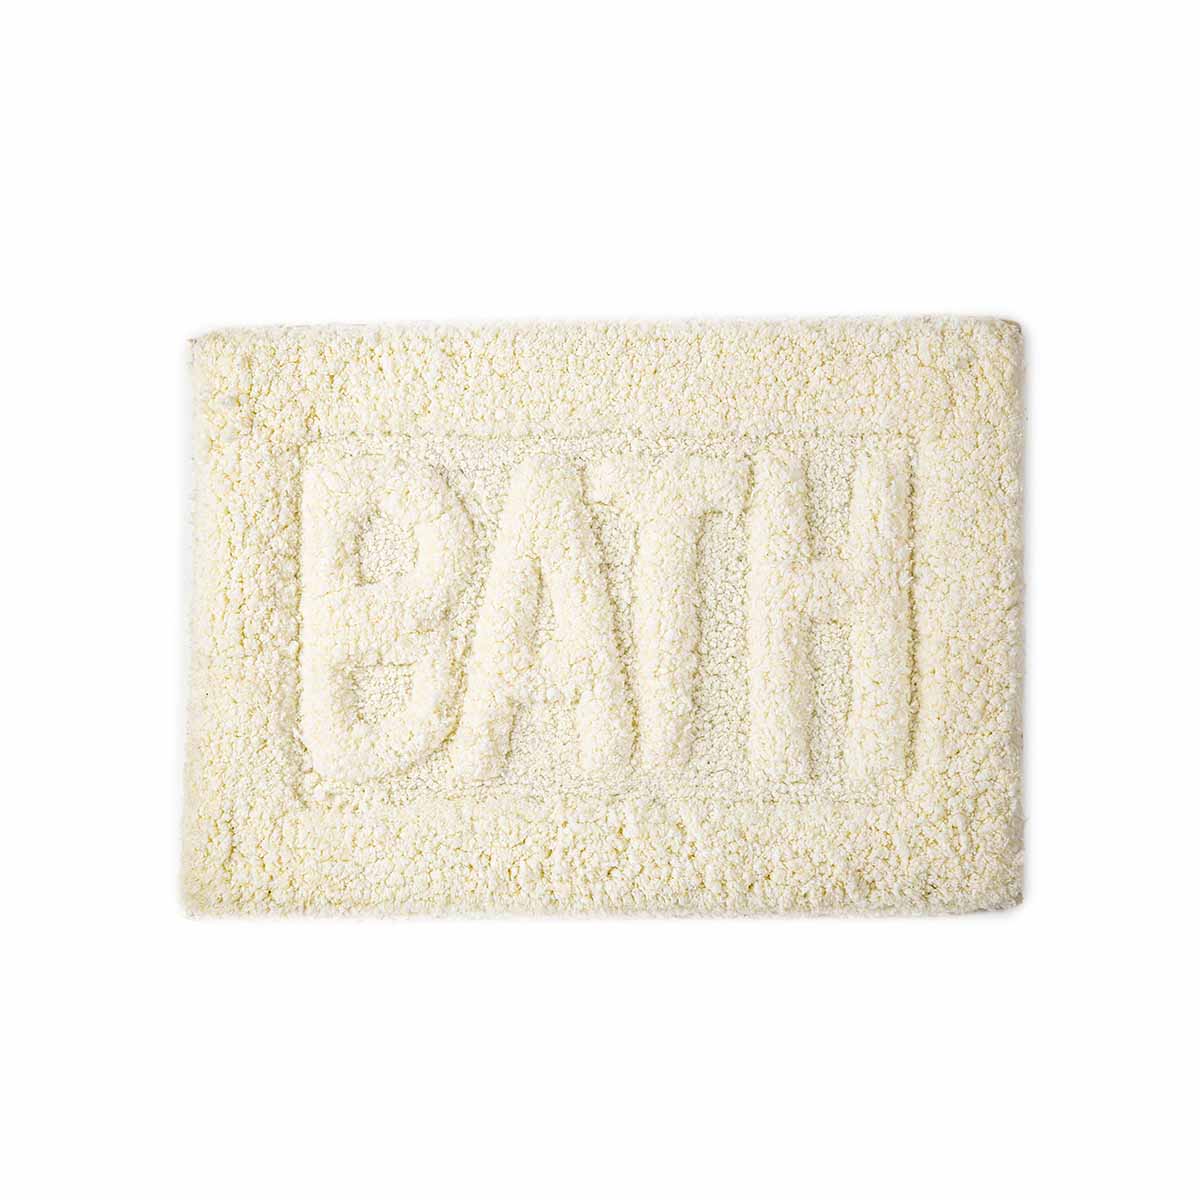 Yein Ivory Bath Mat